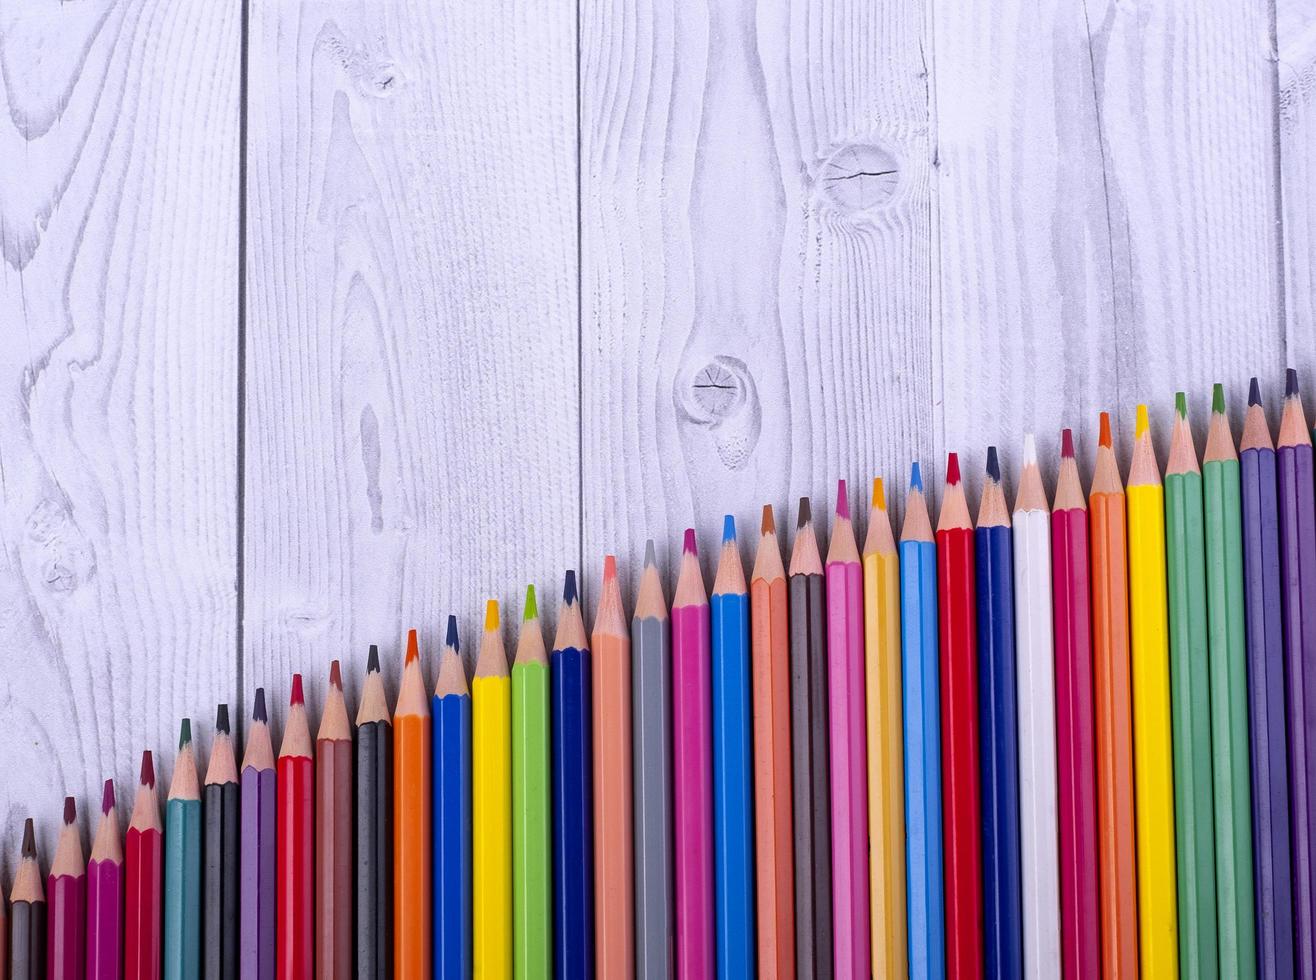 matite colorate in legno, disposte a forma di scala, su fondo grigio e bianco. concetto di educazione. foto